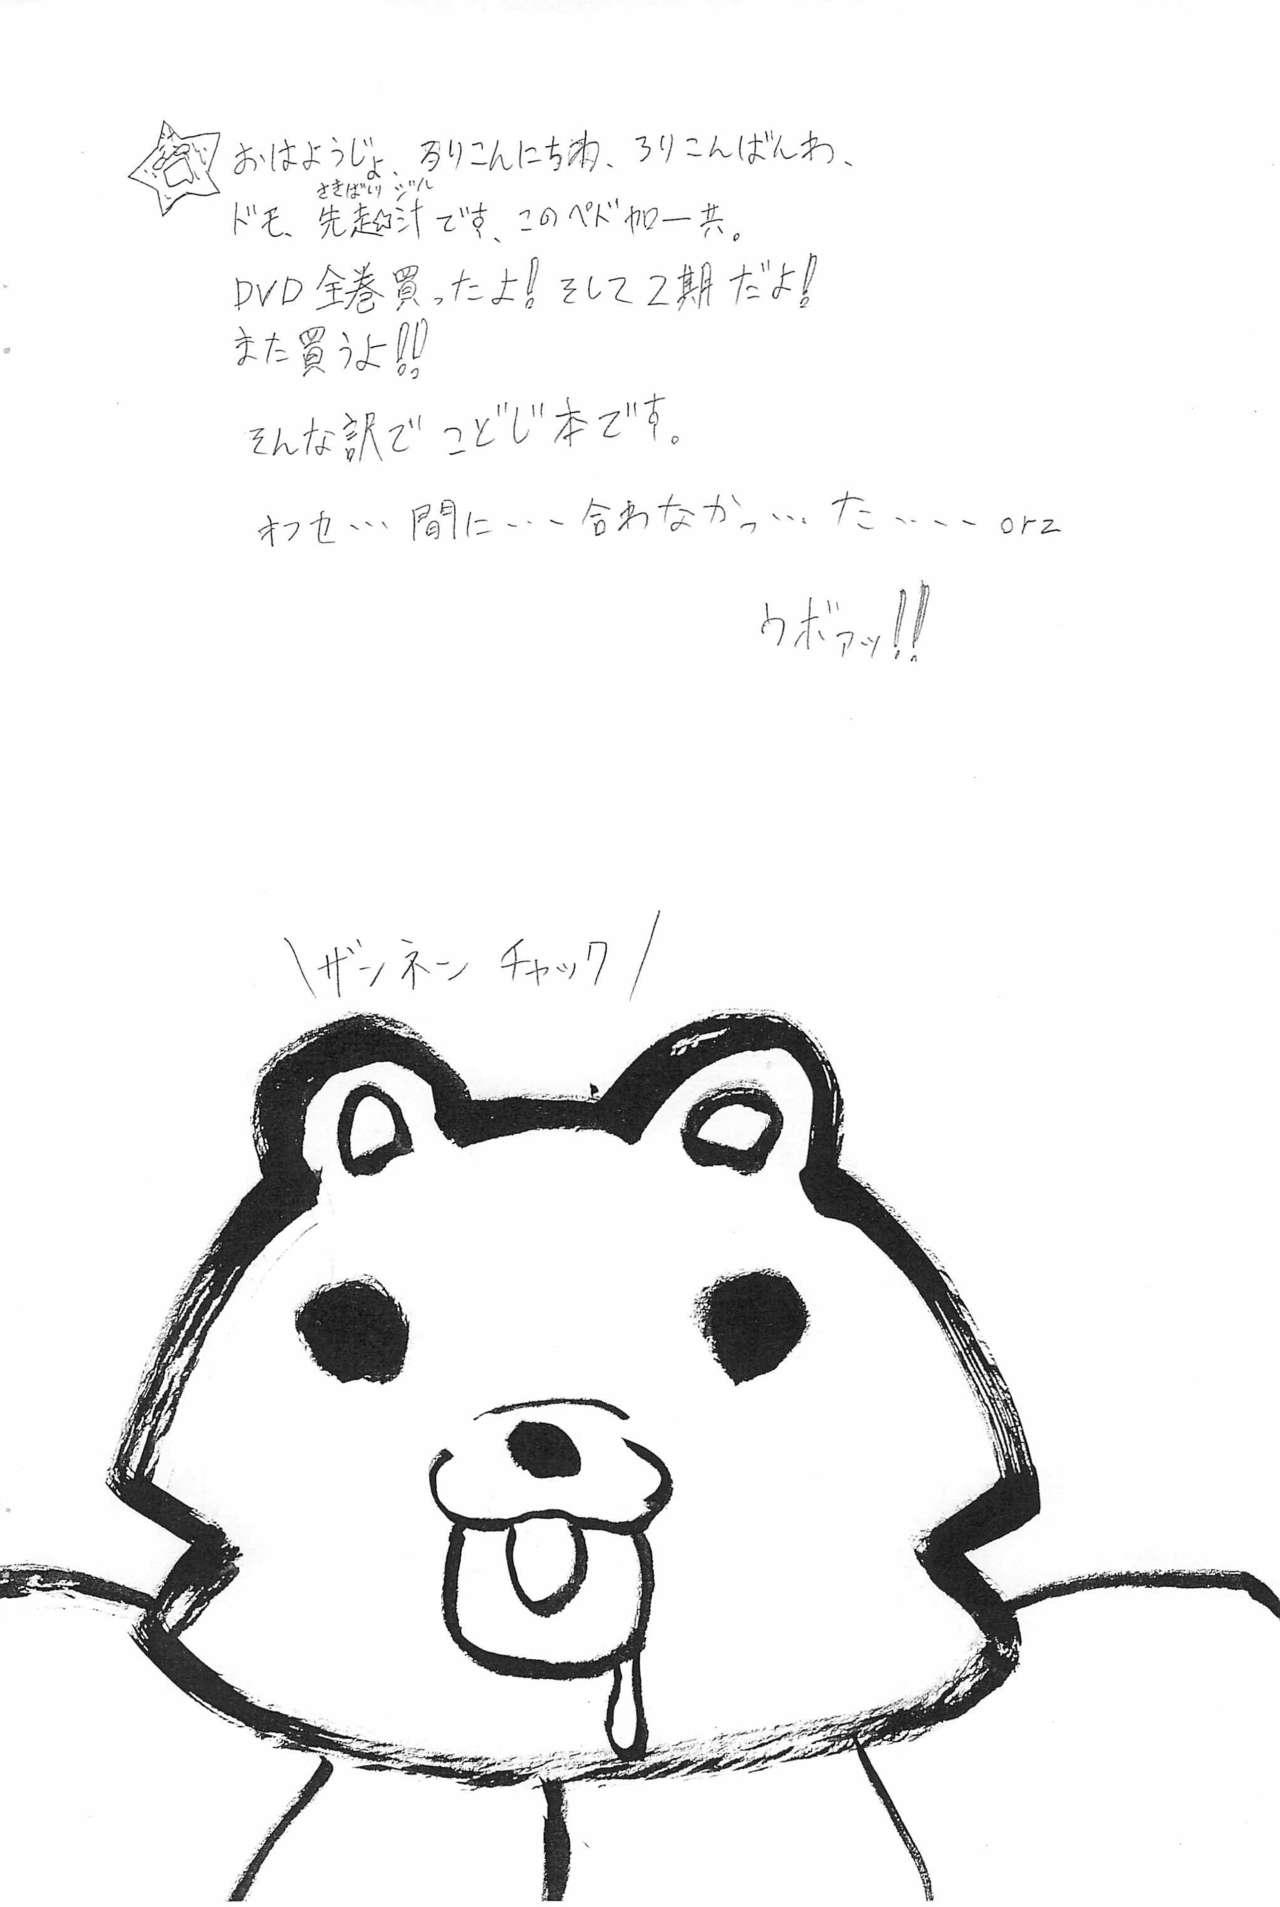 Doggy Kodomo no Jiuboa!! - Kodomo no jikan Petite Teen - Page 2